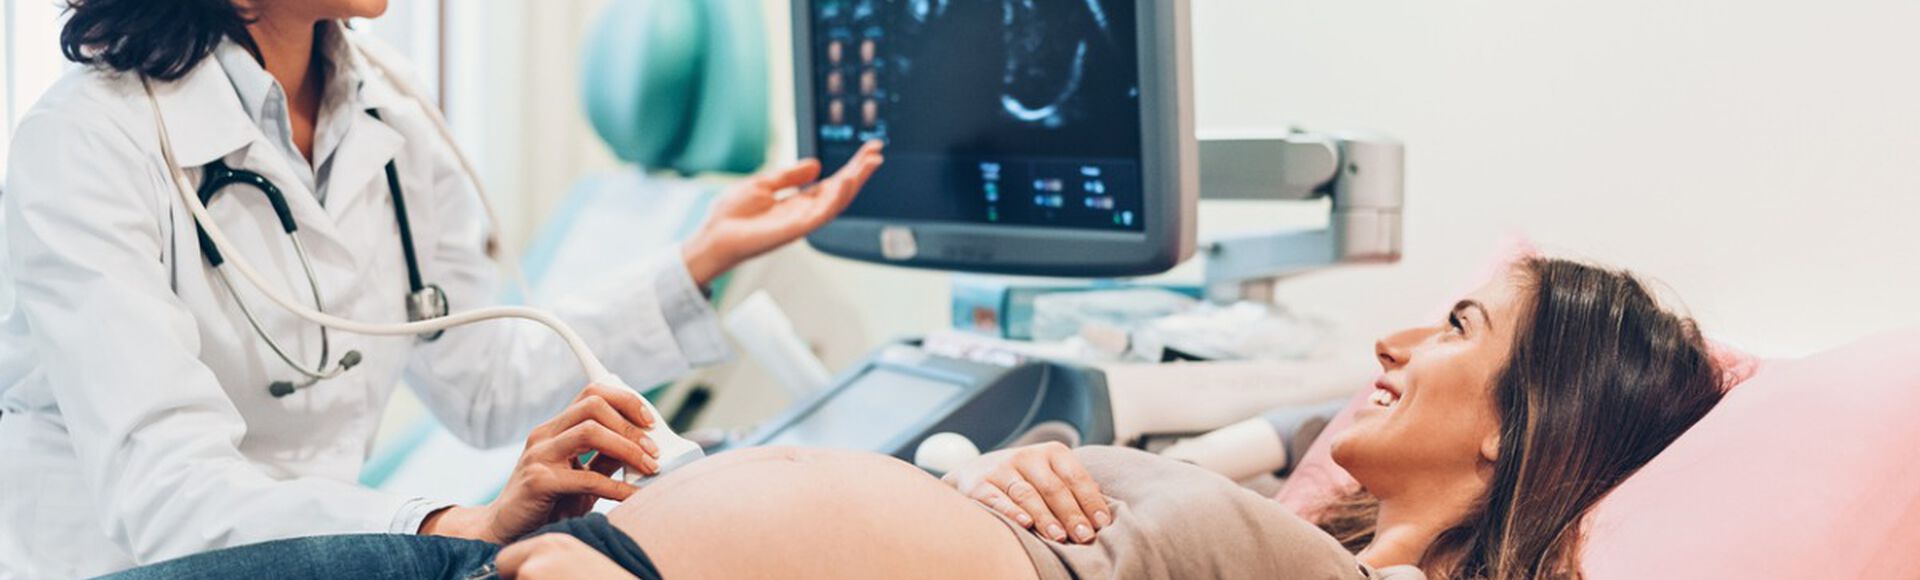 Exame de ultrassom fetal